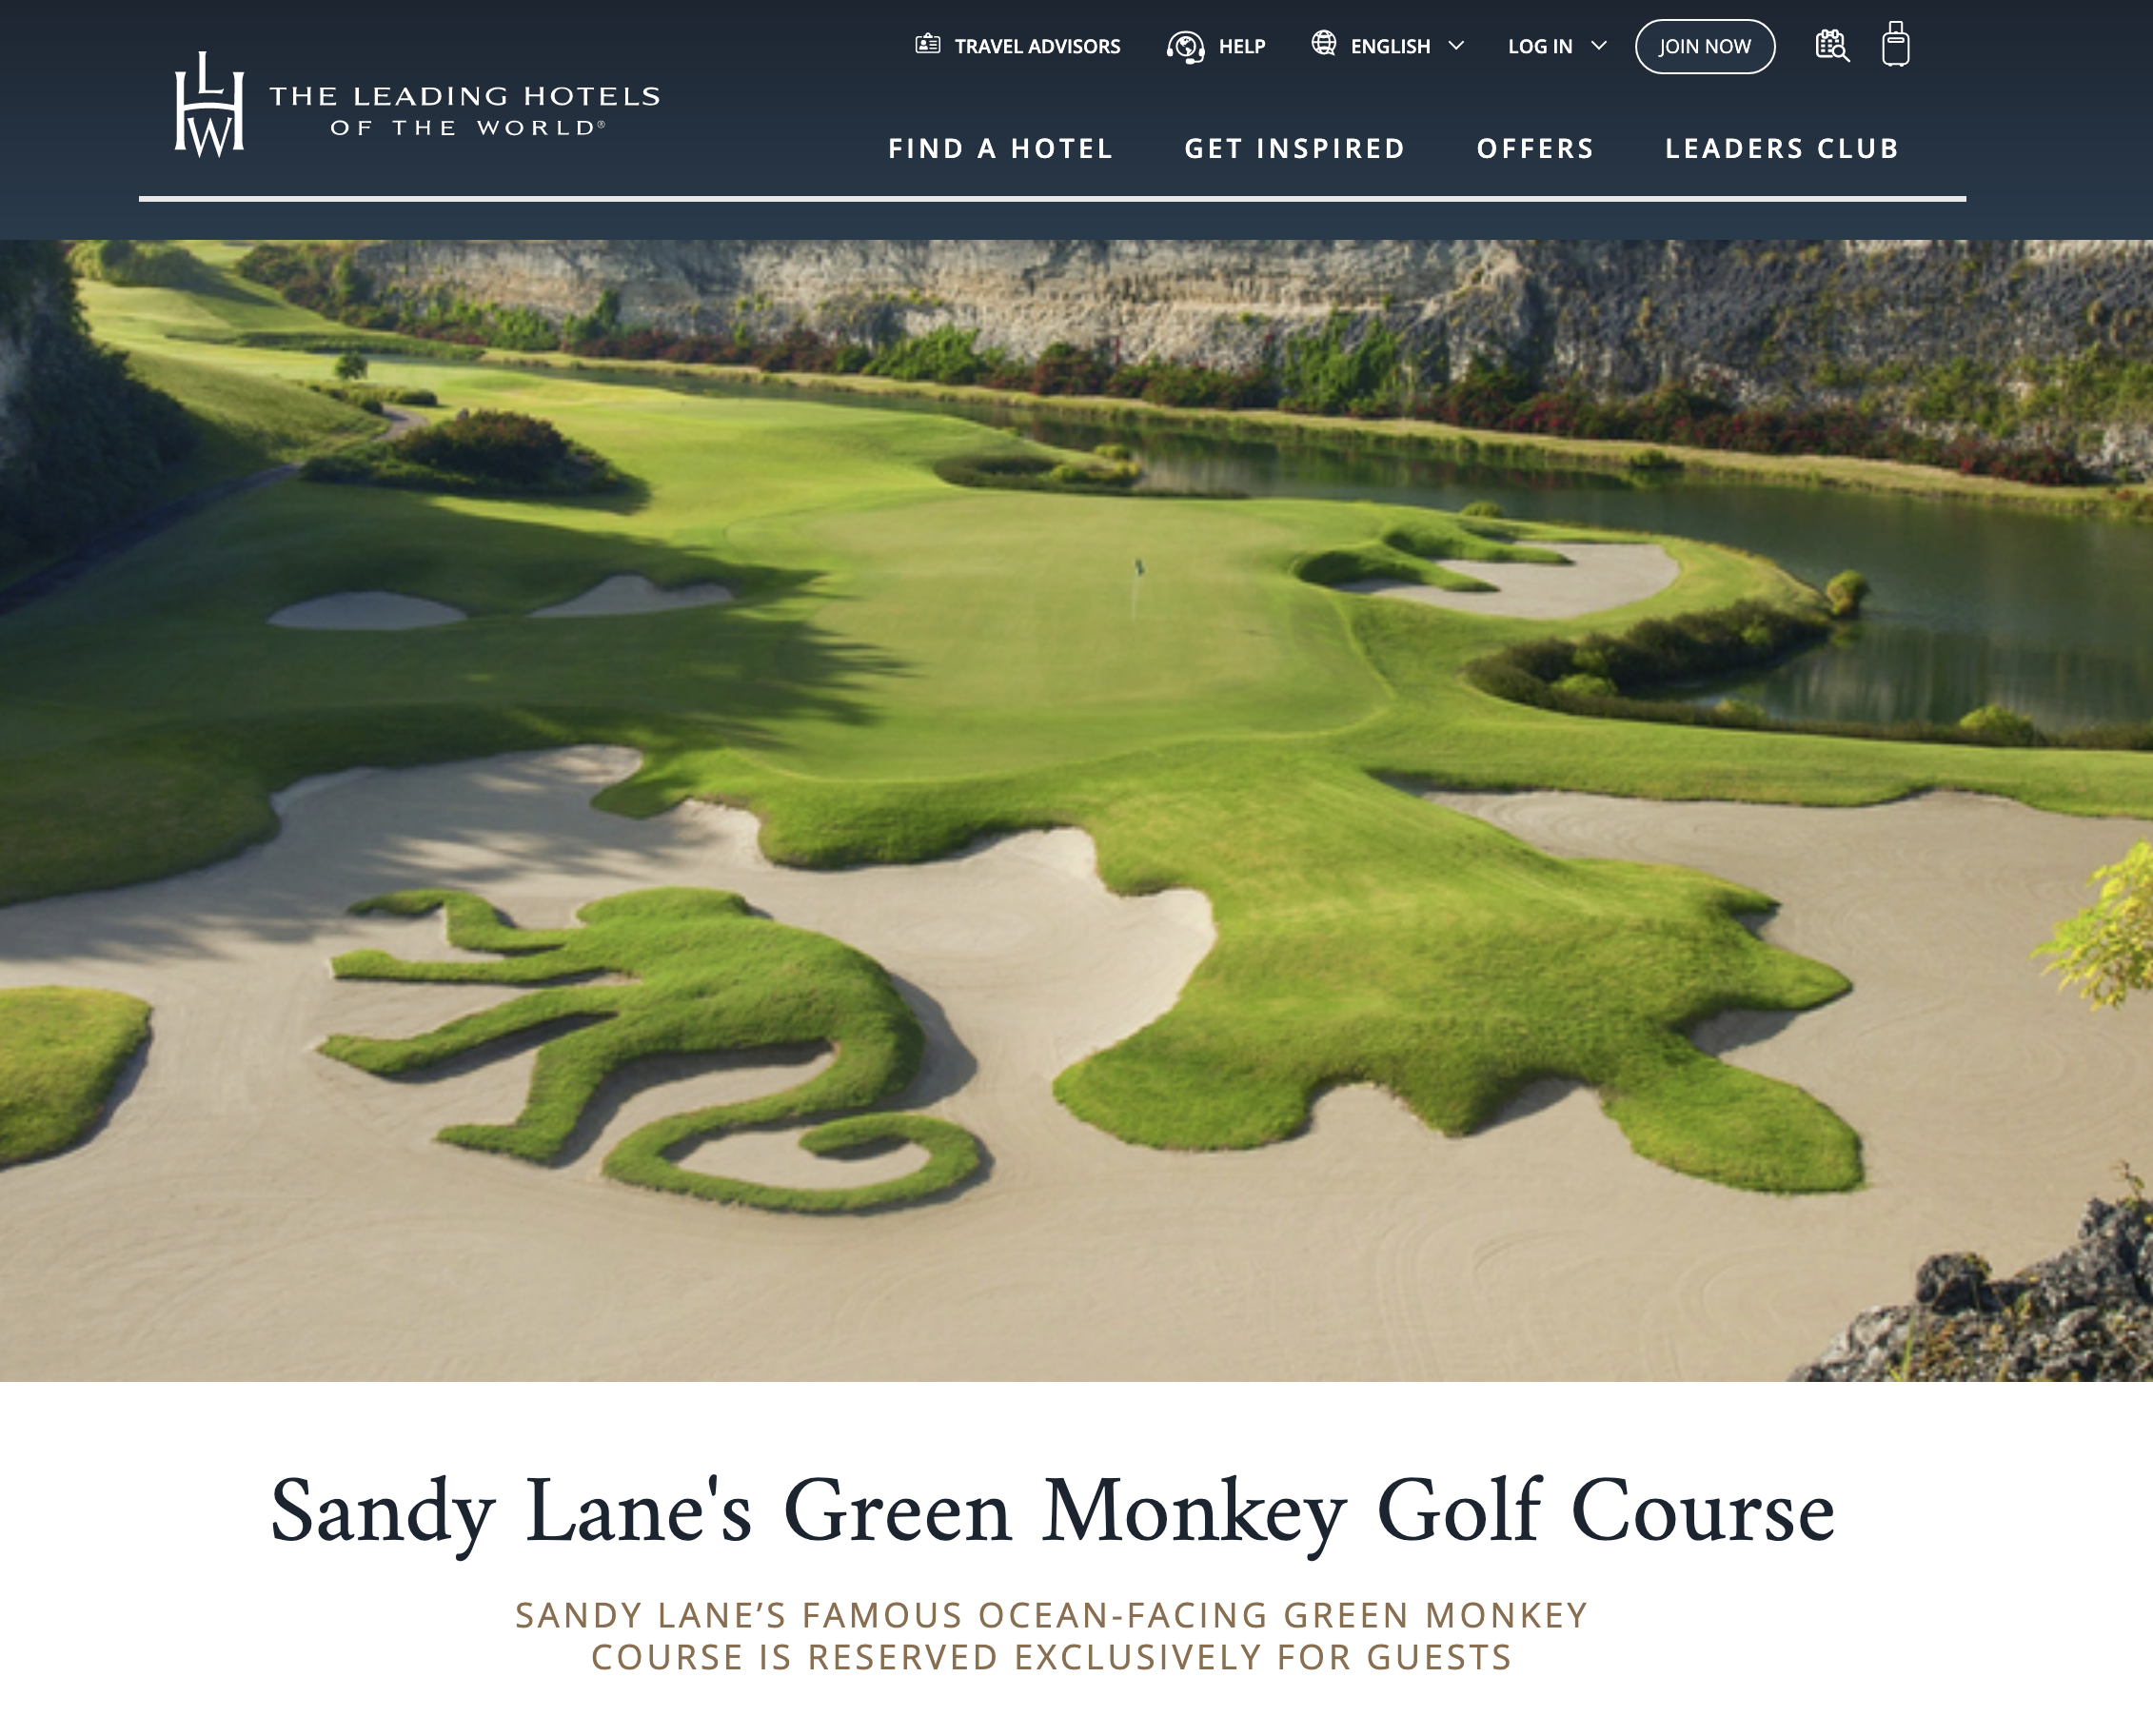 Sandy Lane’s Green Monkey Golf Course